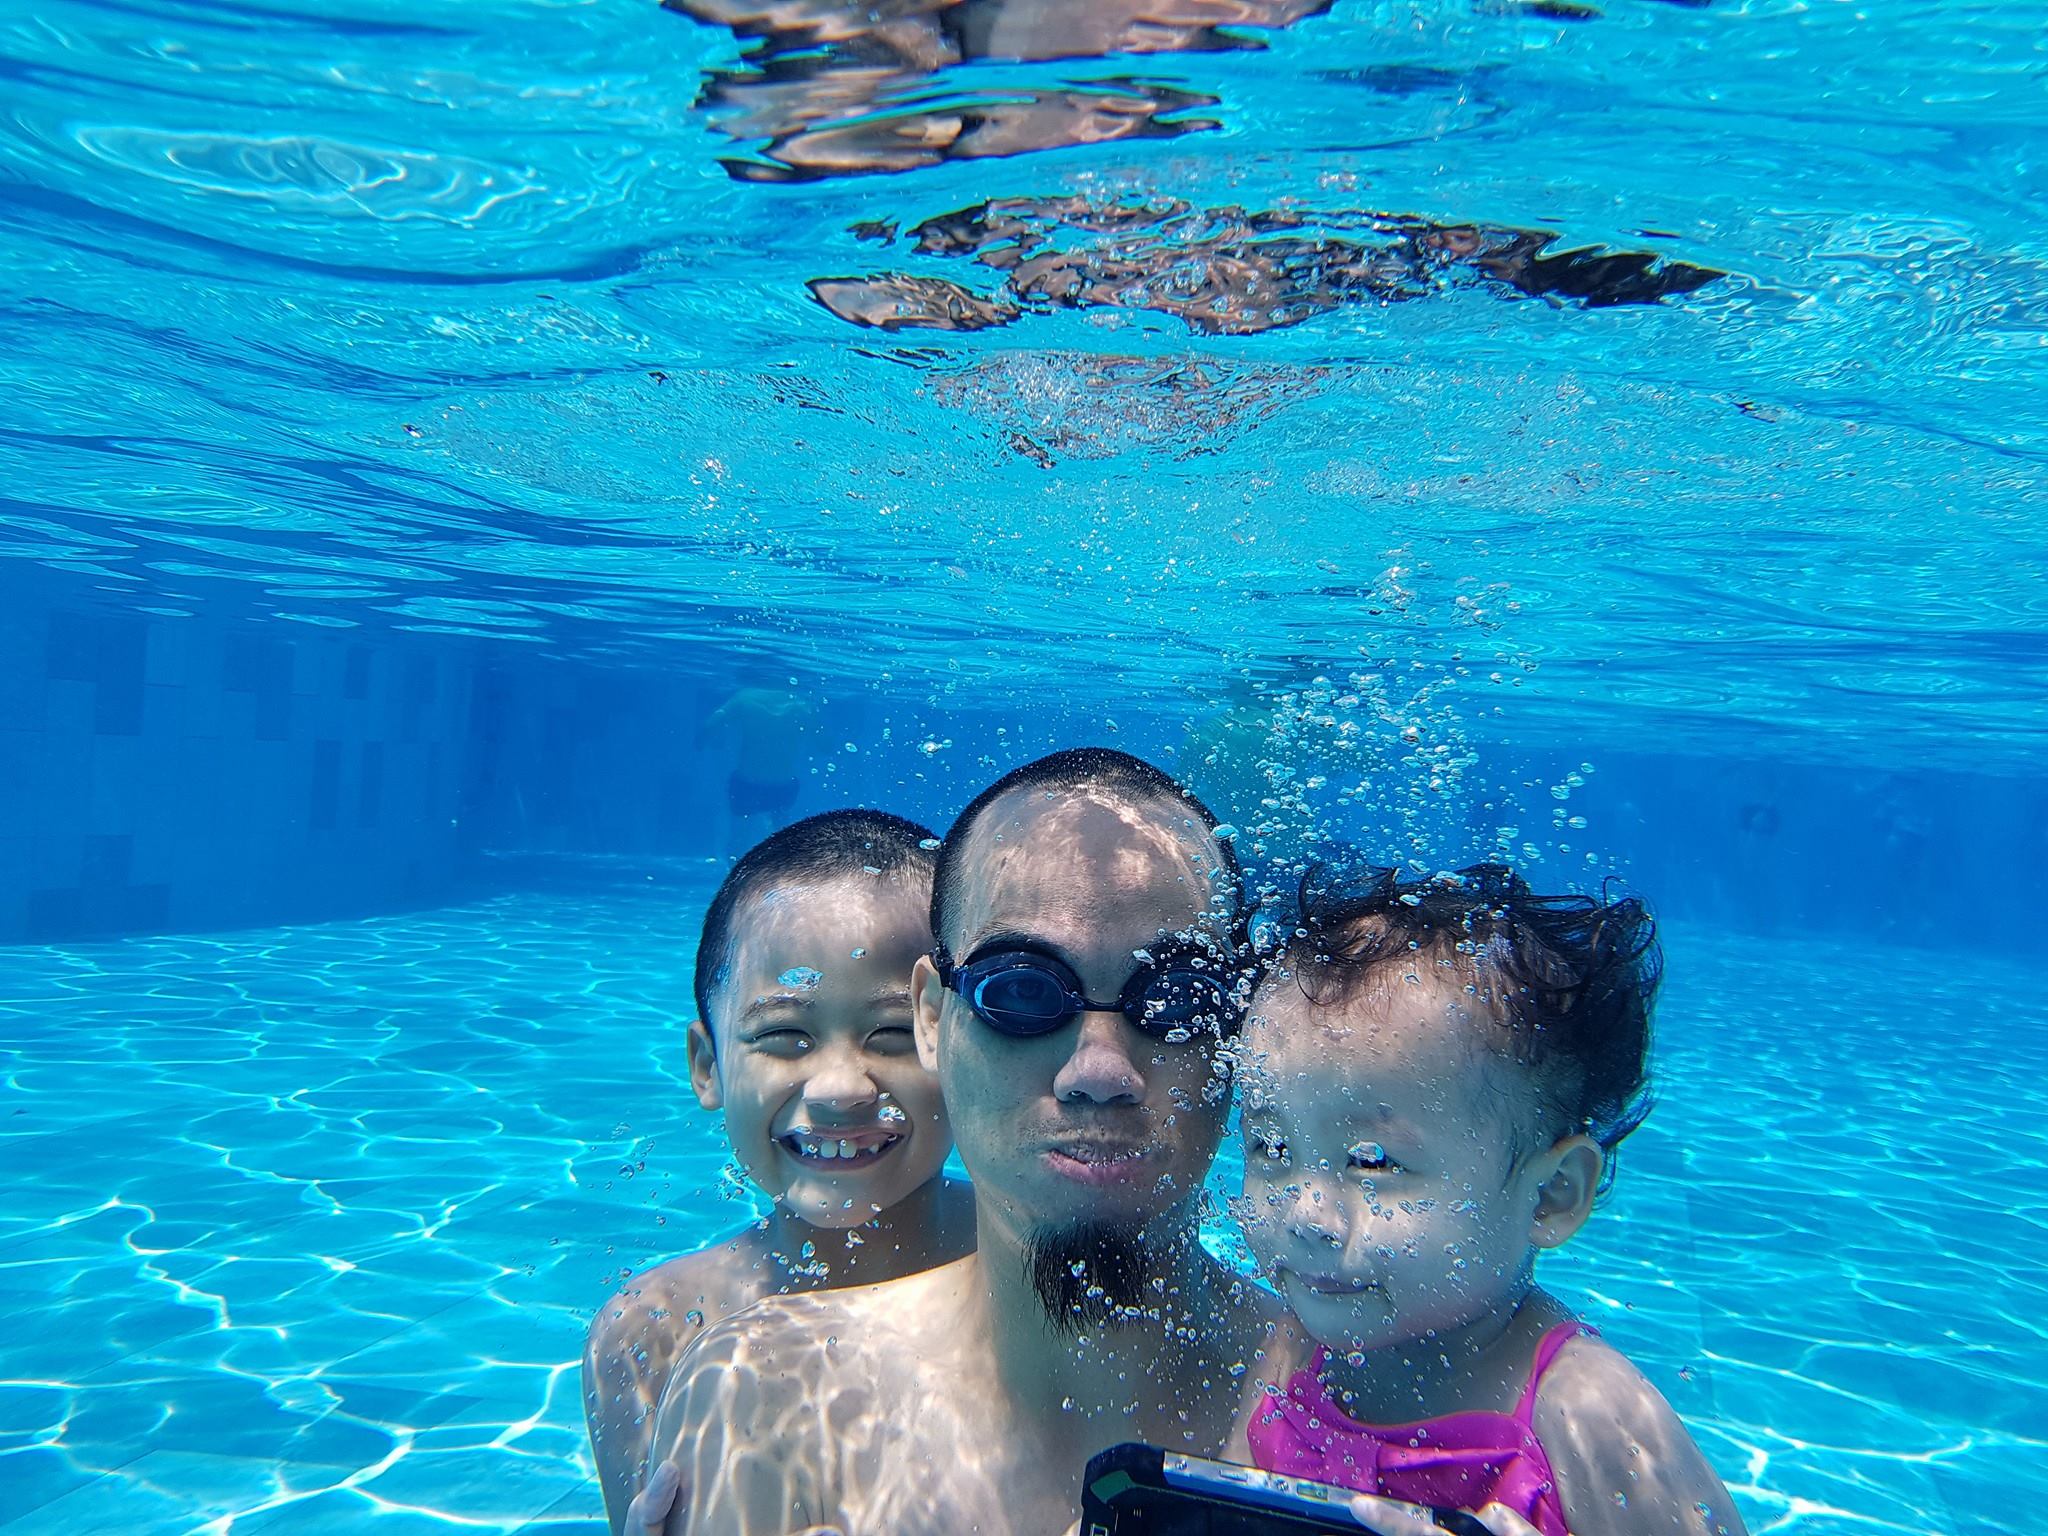 Hình chụp bằng #Note7 
Chụp dưới nước thì mình thấy Samsung vẫn...